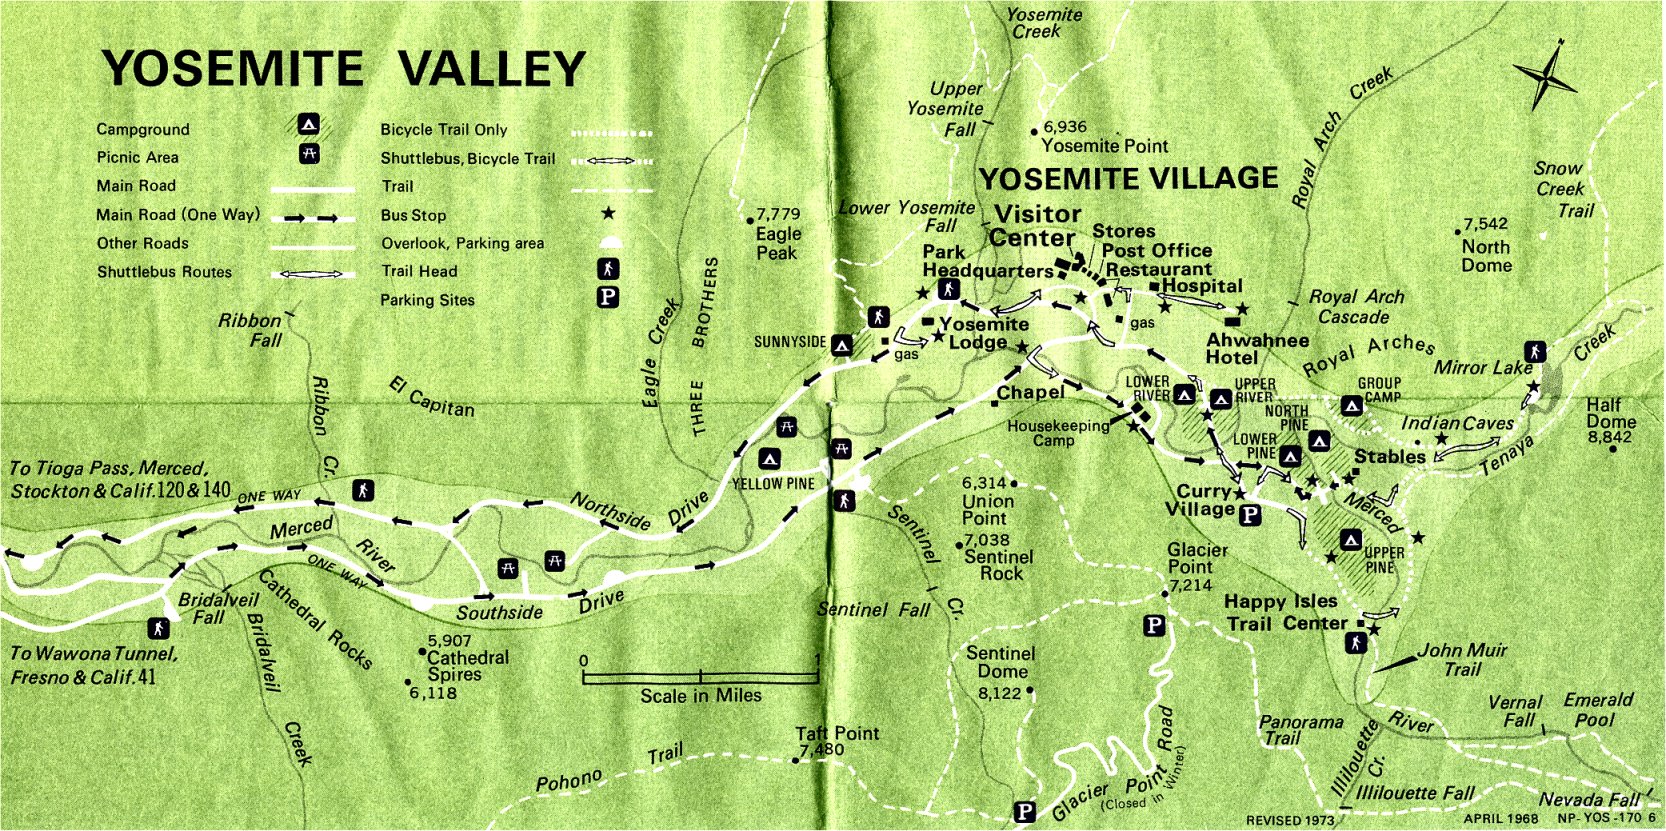 Un día en Yosemite. ¿Qué hacer? Planning/ Itinerario. - Foro Costa Oeste de USA